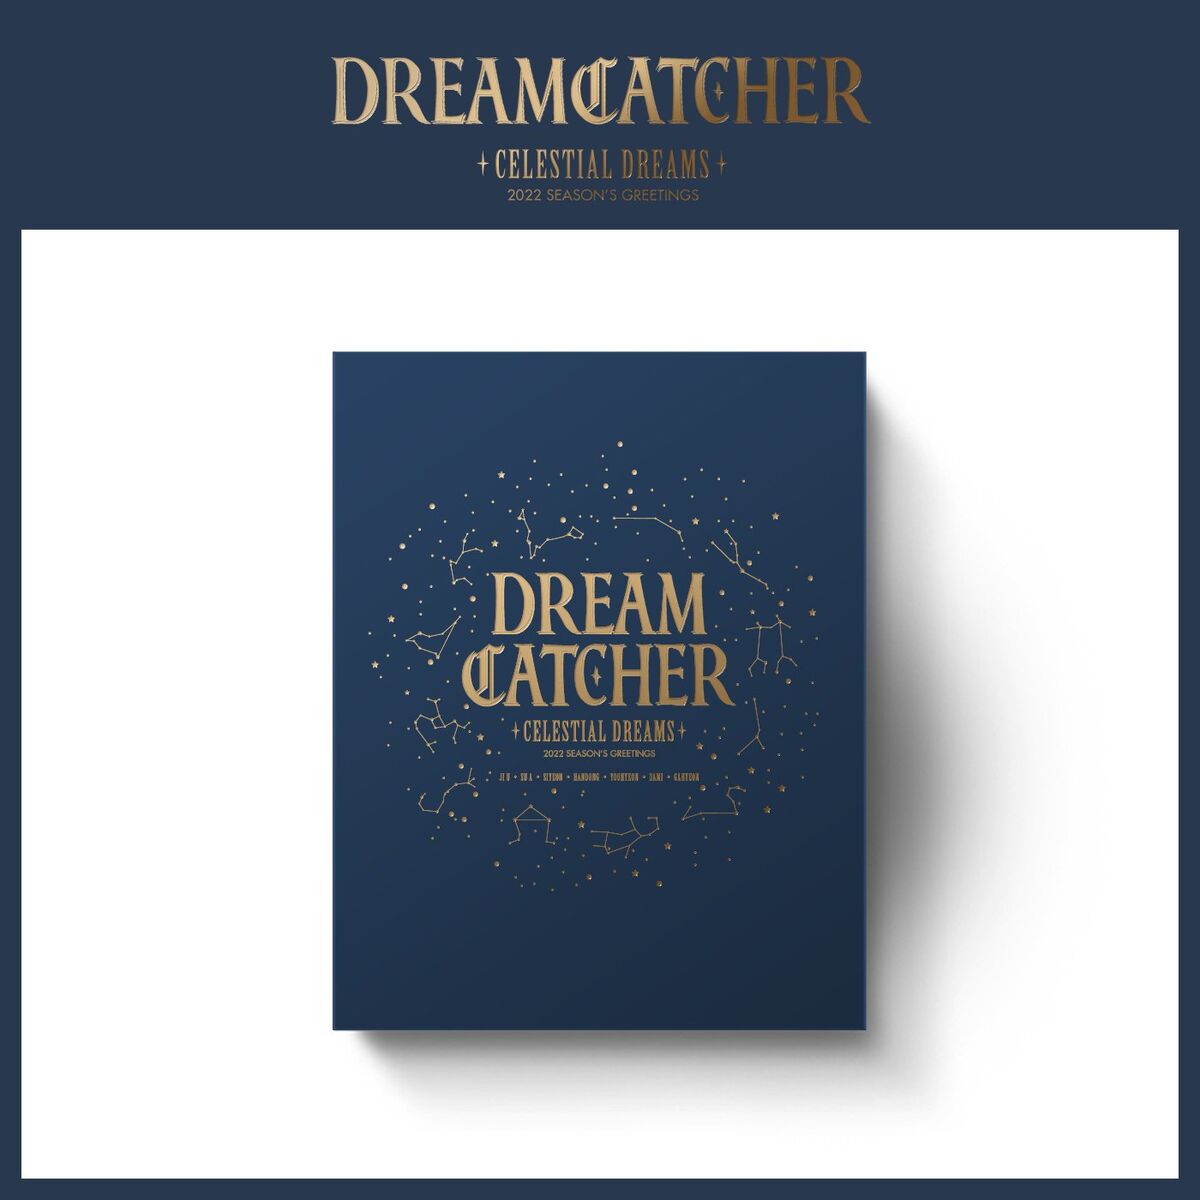 Dreamcatcher 2022 SEASON'S GREETINGS | Dreamcatcher Wiki | Fandom